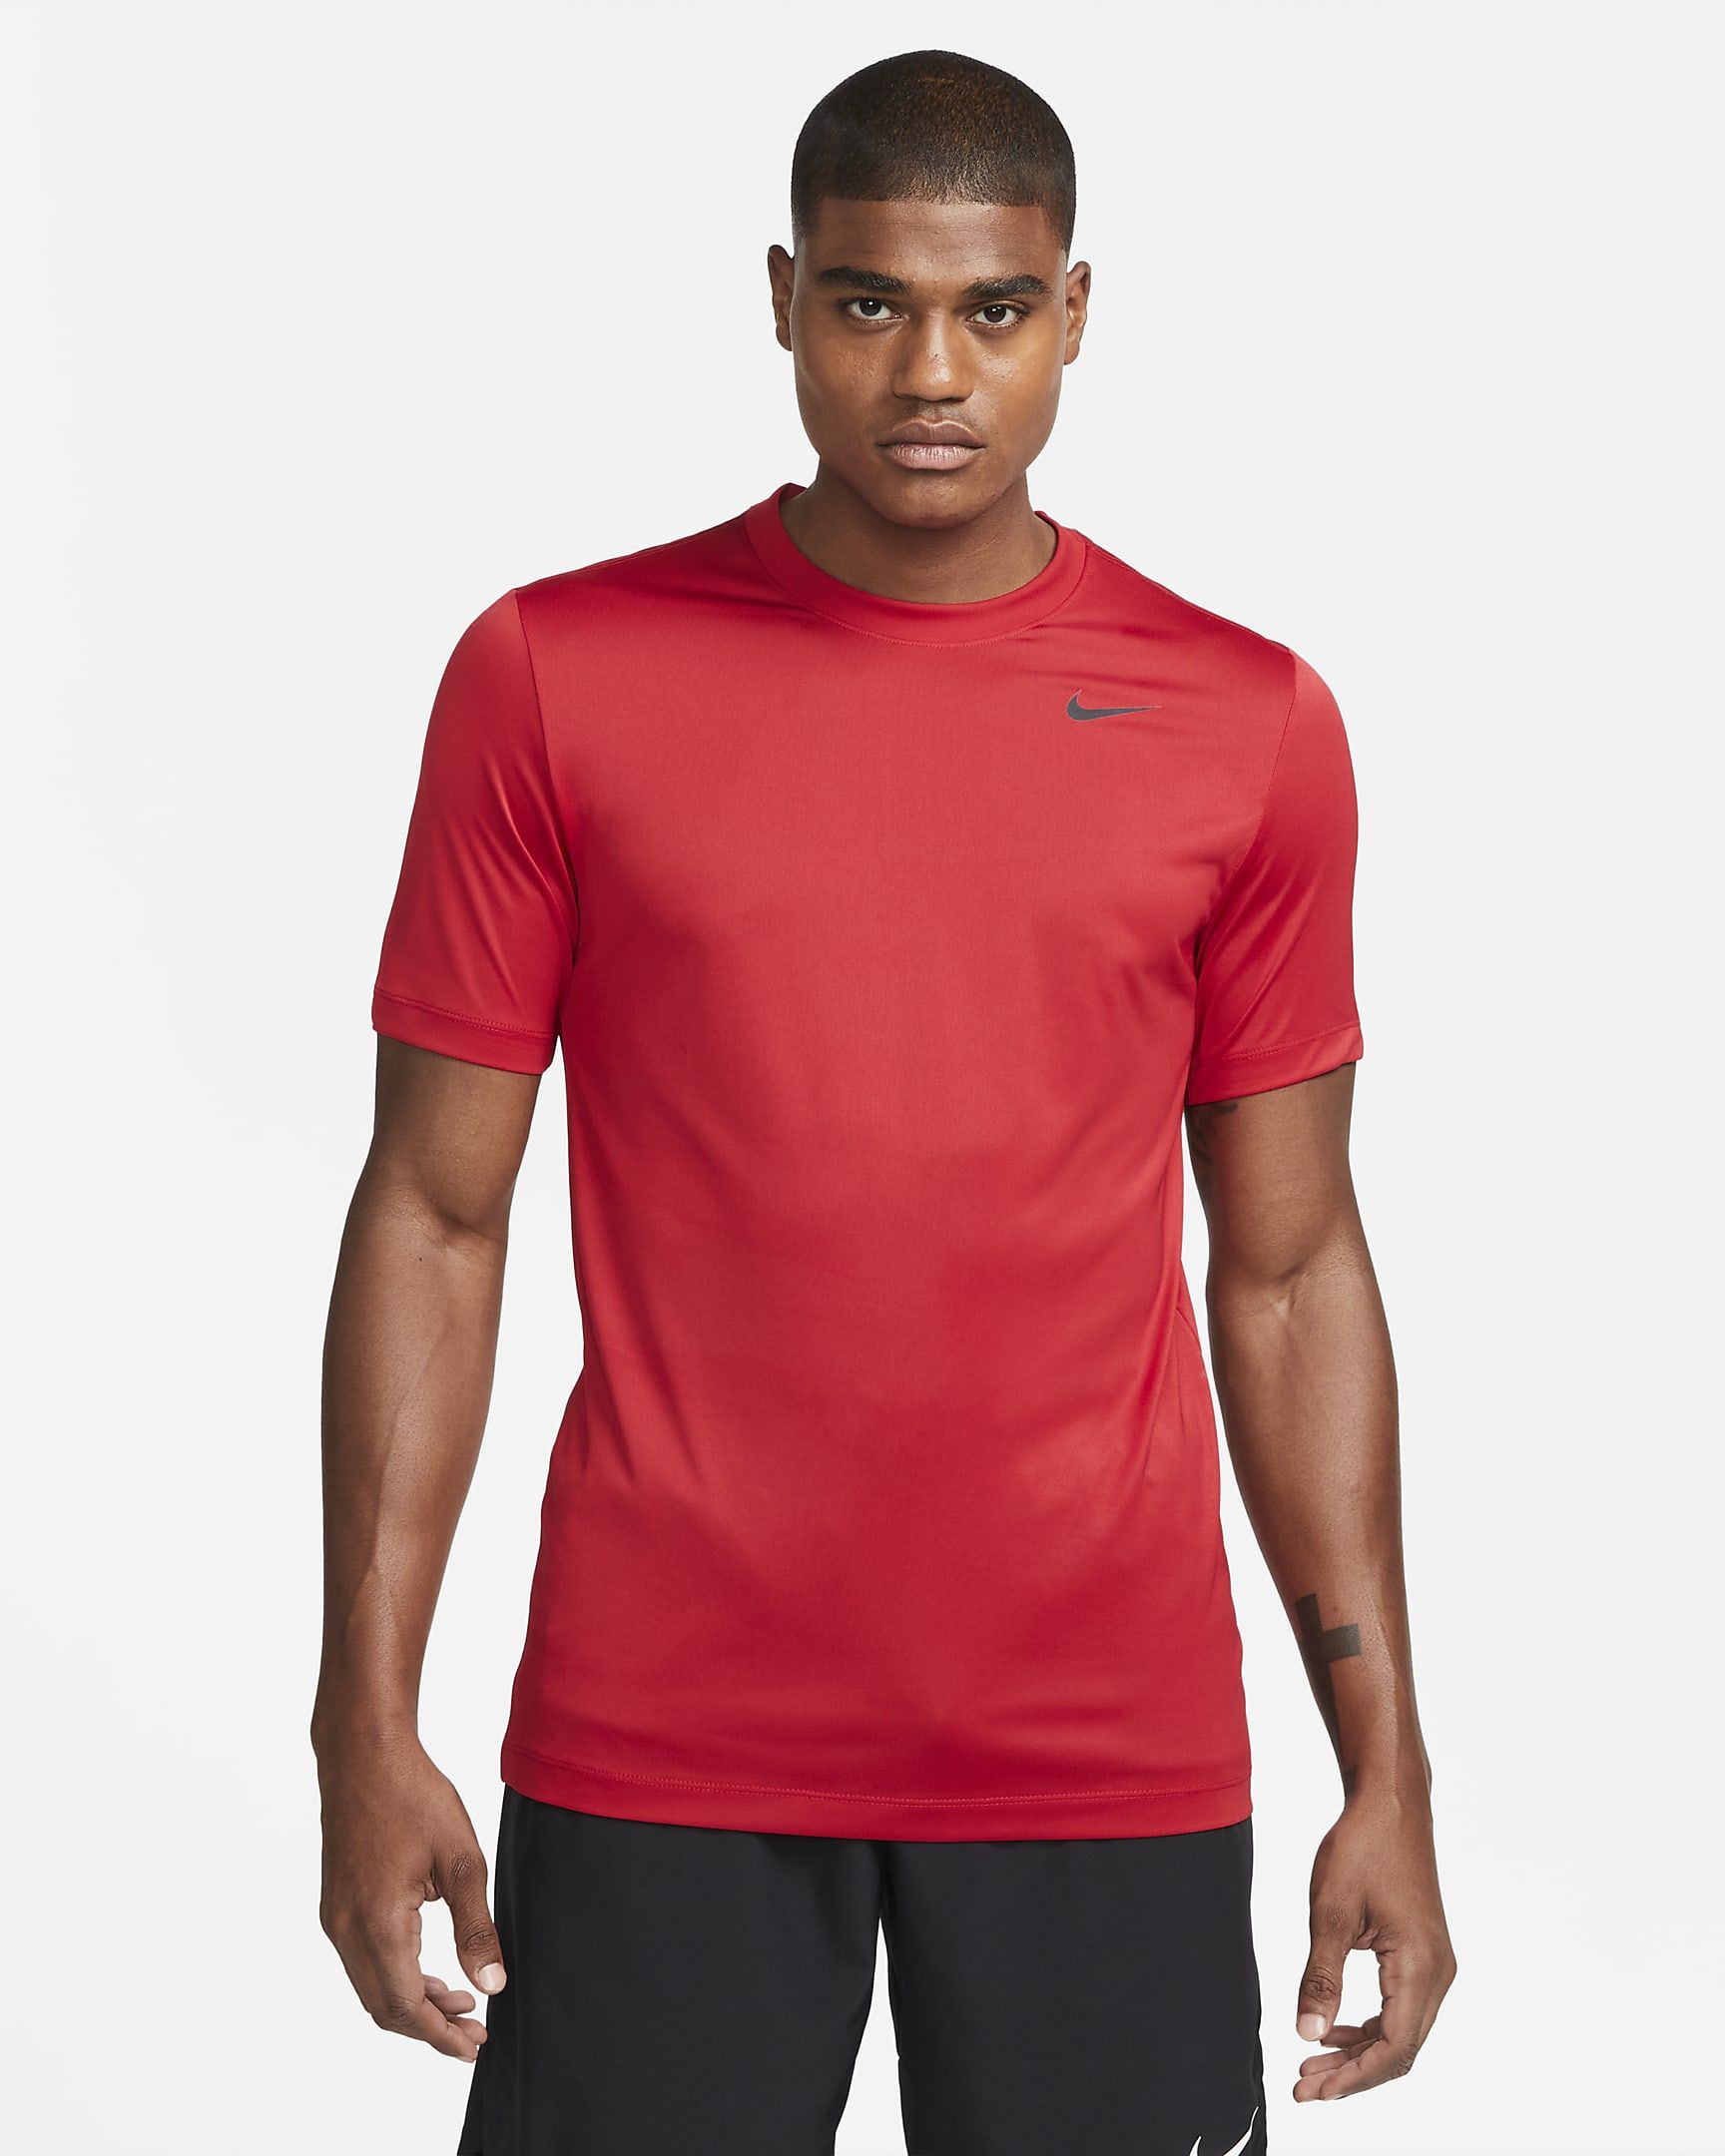 Nike Dri-FIT Legend Men's Fitness T-Shirt. Nike.com | Nike (US)